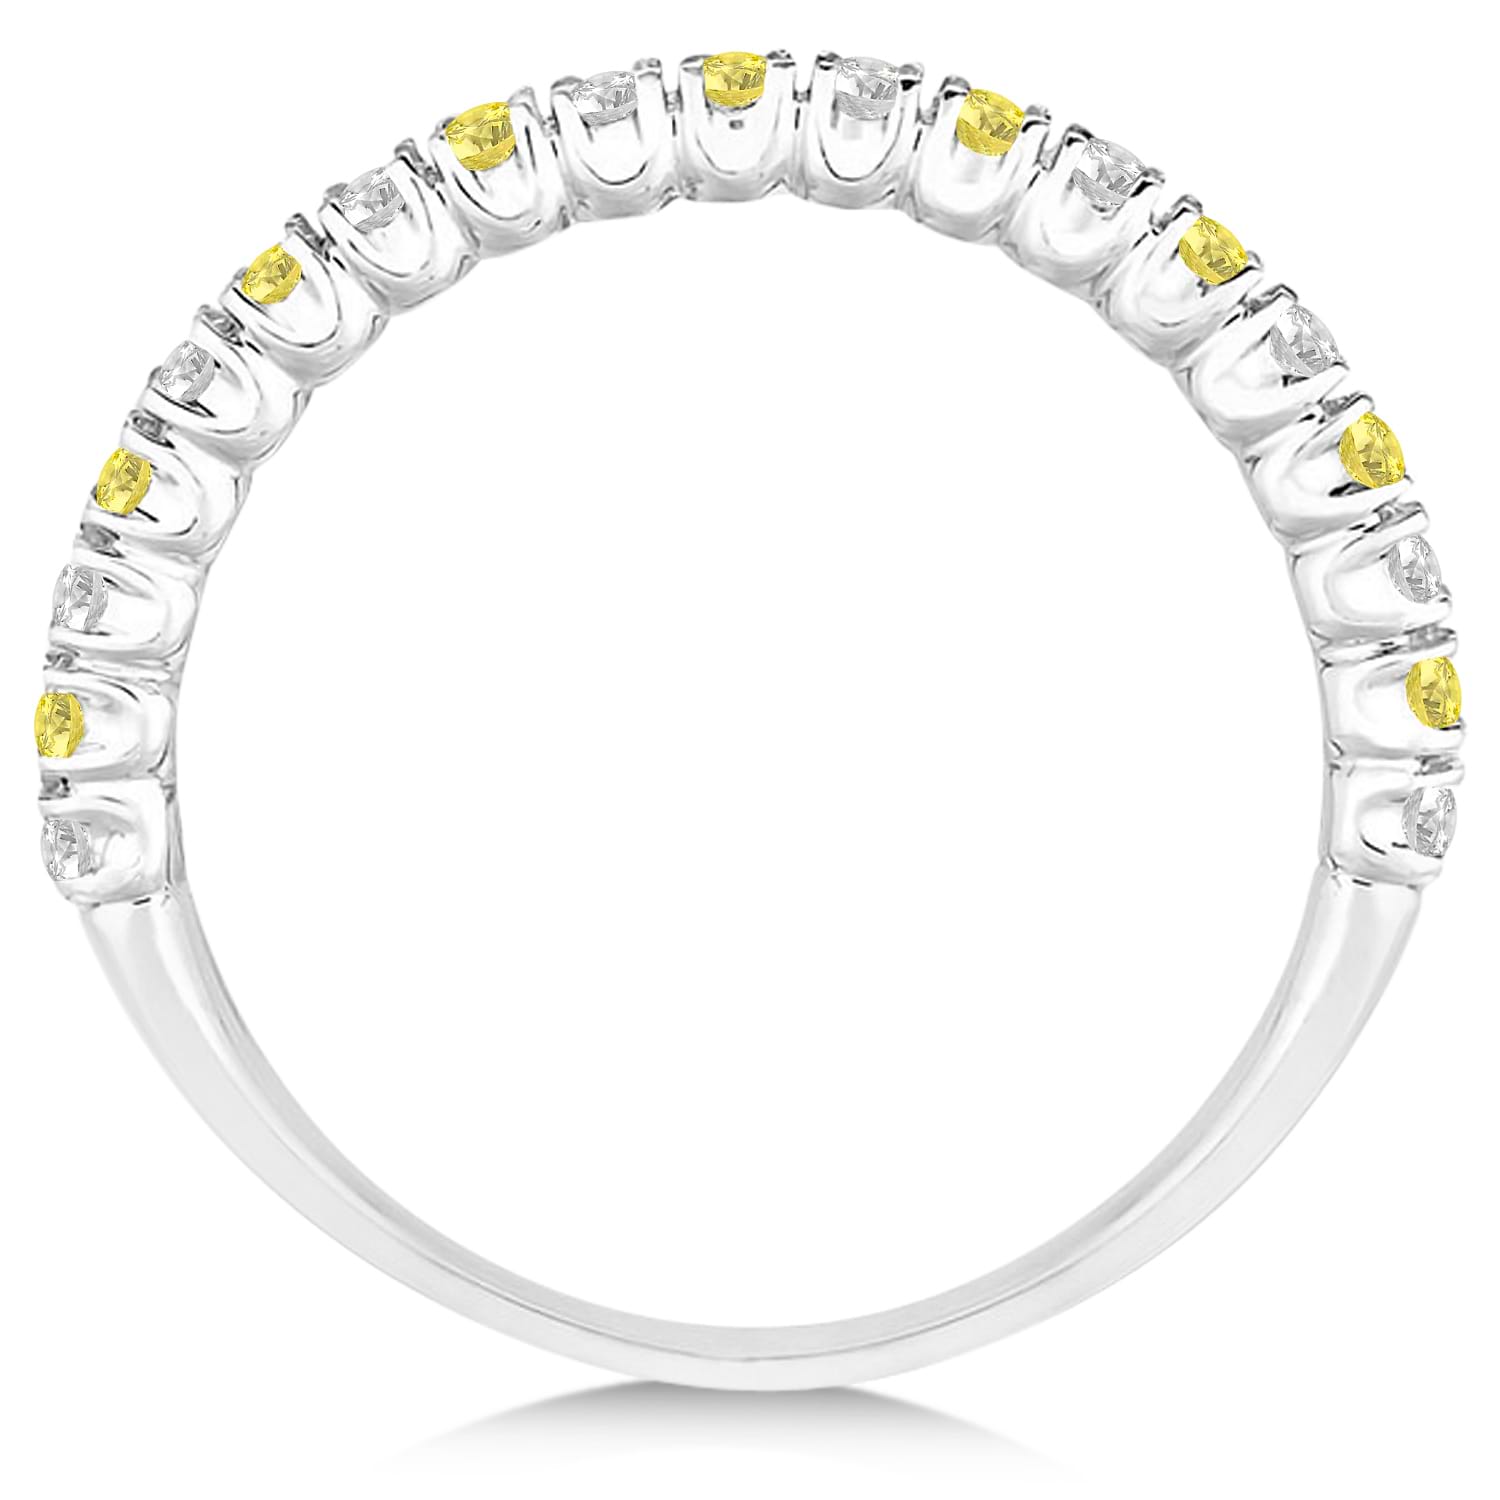 Yellow & White Diamond Wedding Band Anniversary Ring in 14k White Gold (0.50ct)